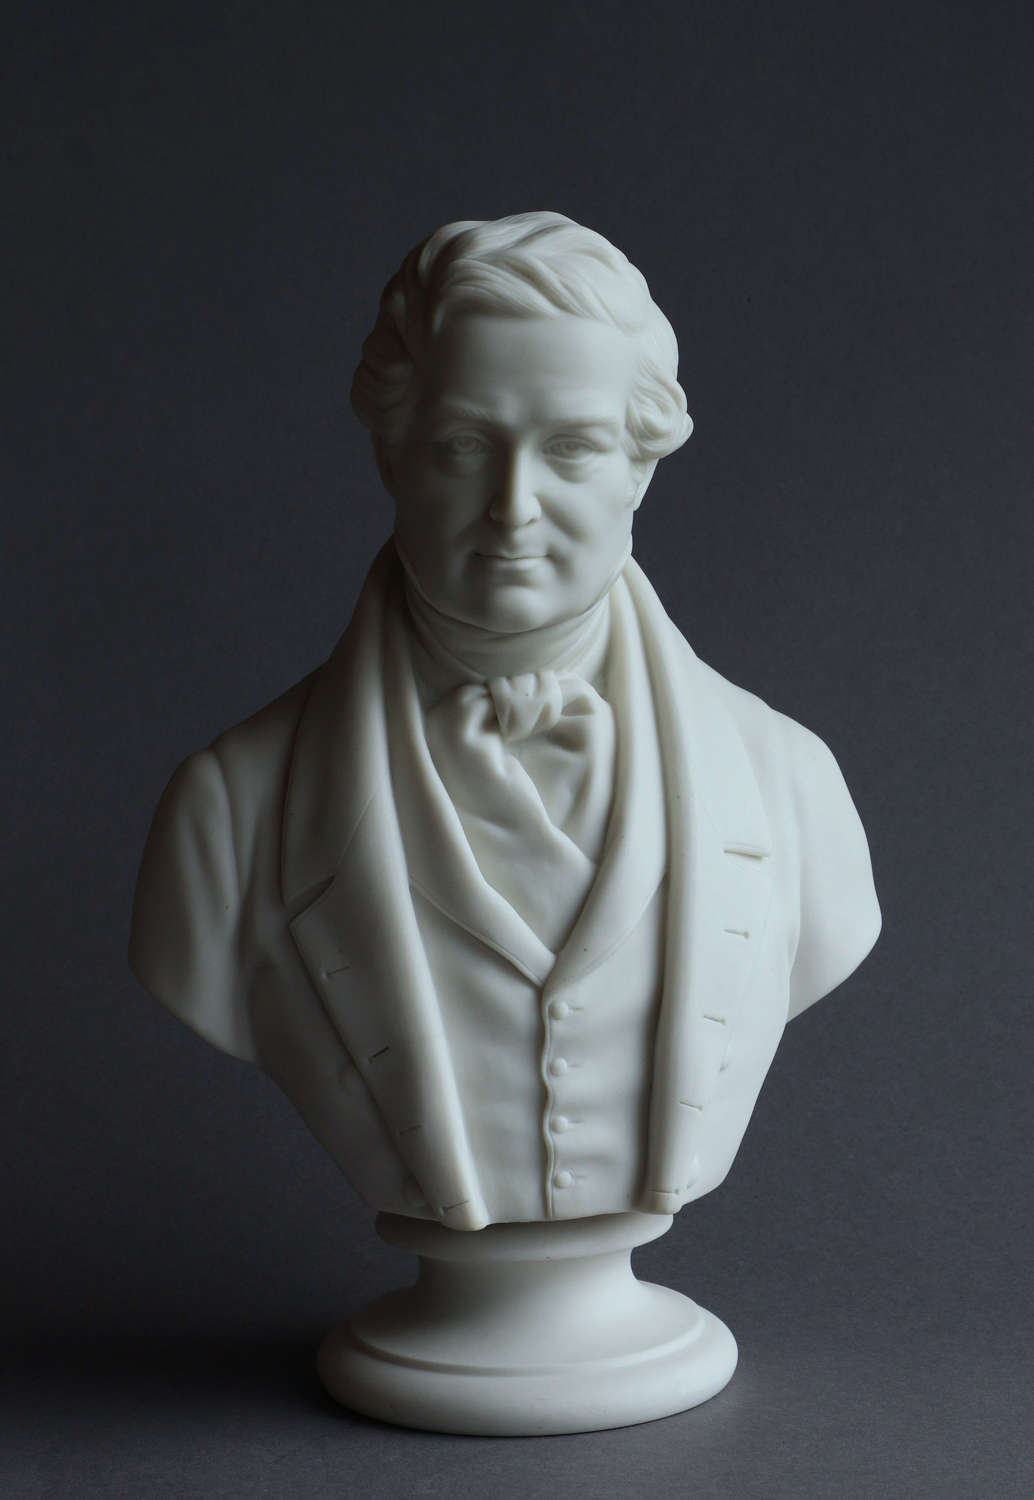 A Parian bust of Robert Peel by Copeland